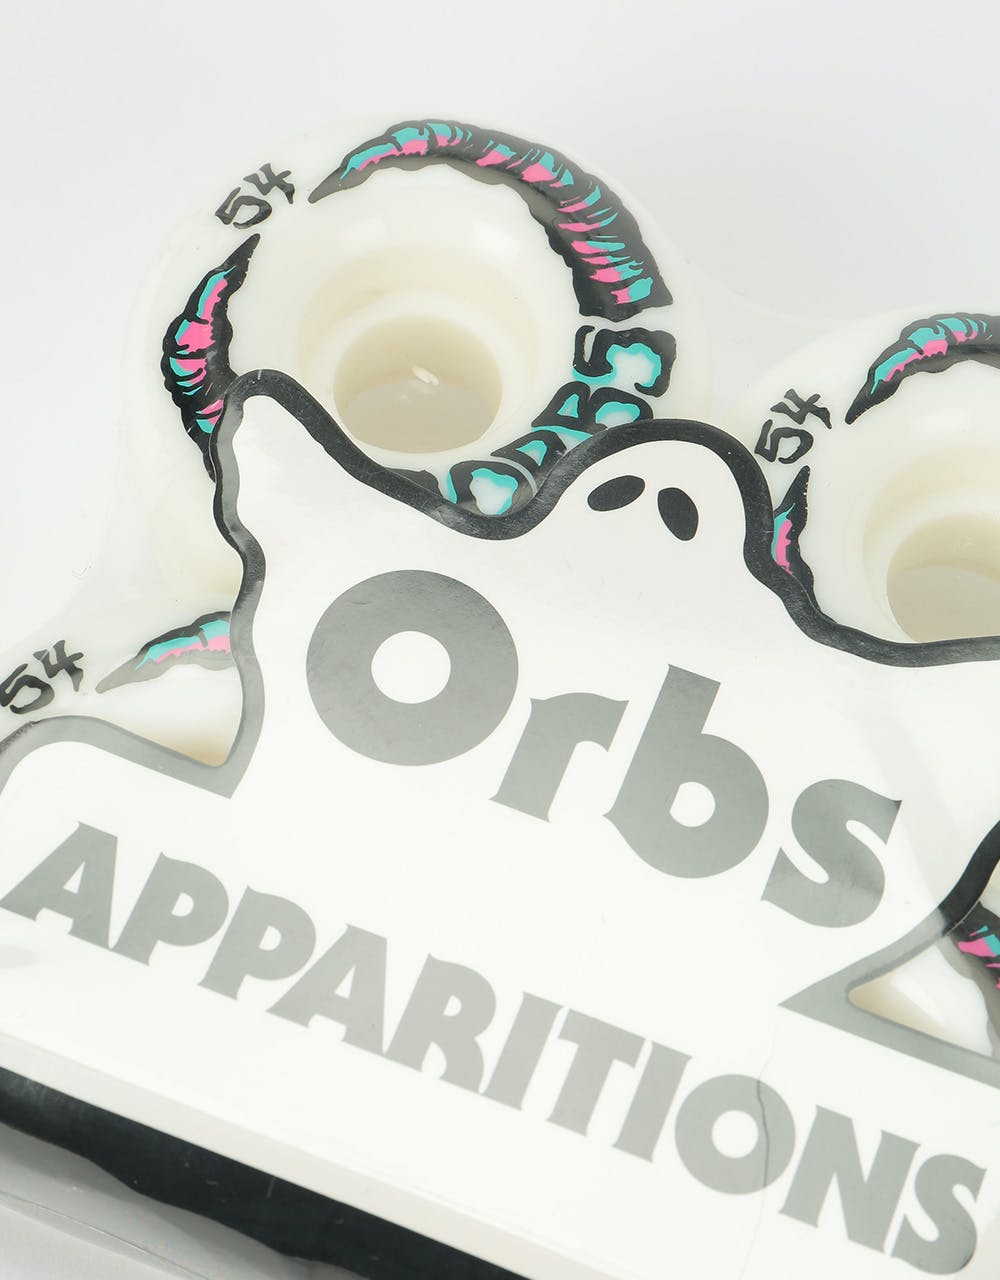 Orbs Apparitions Whites 99a Skateboard Wheel - 54mm